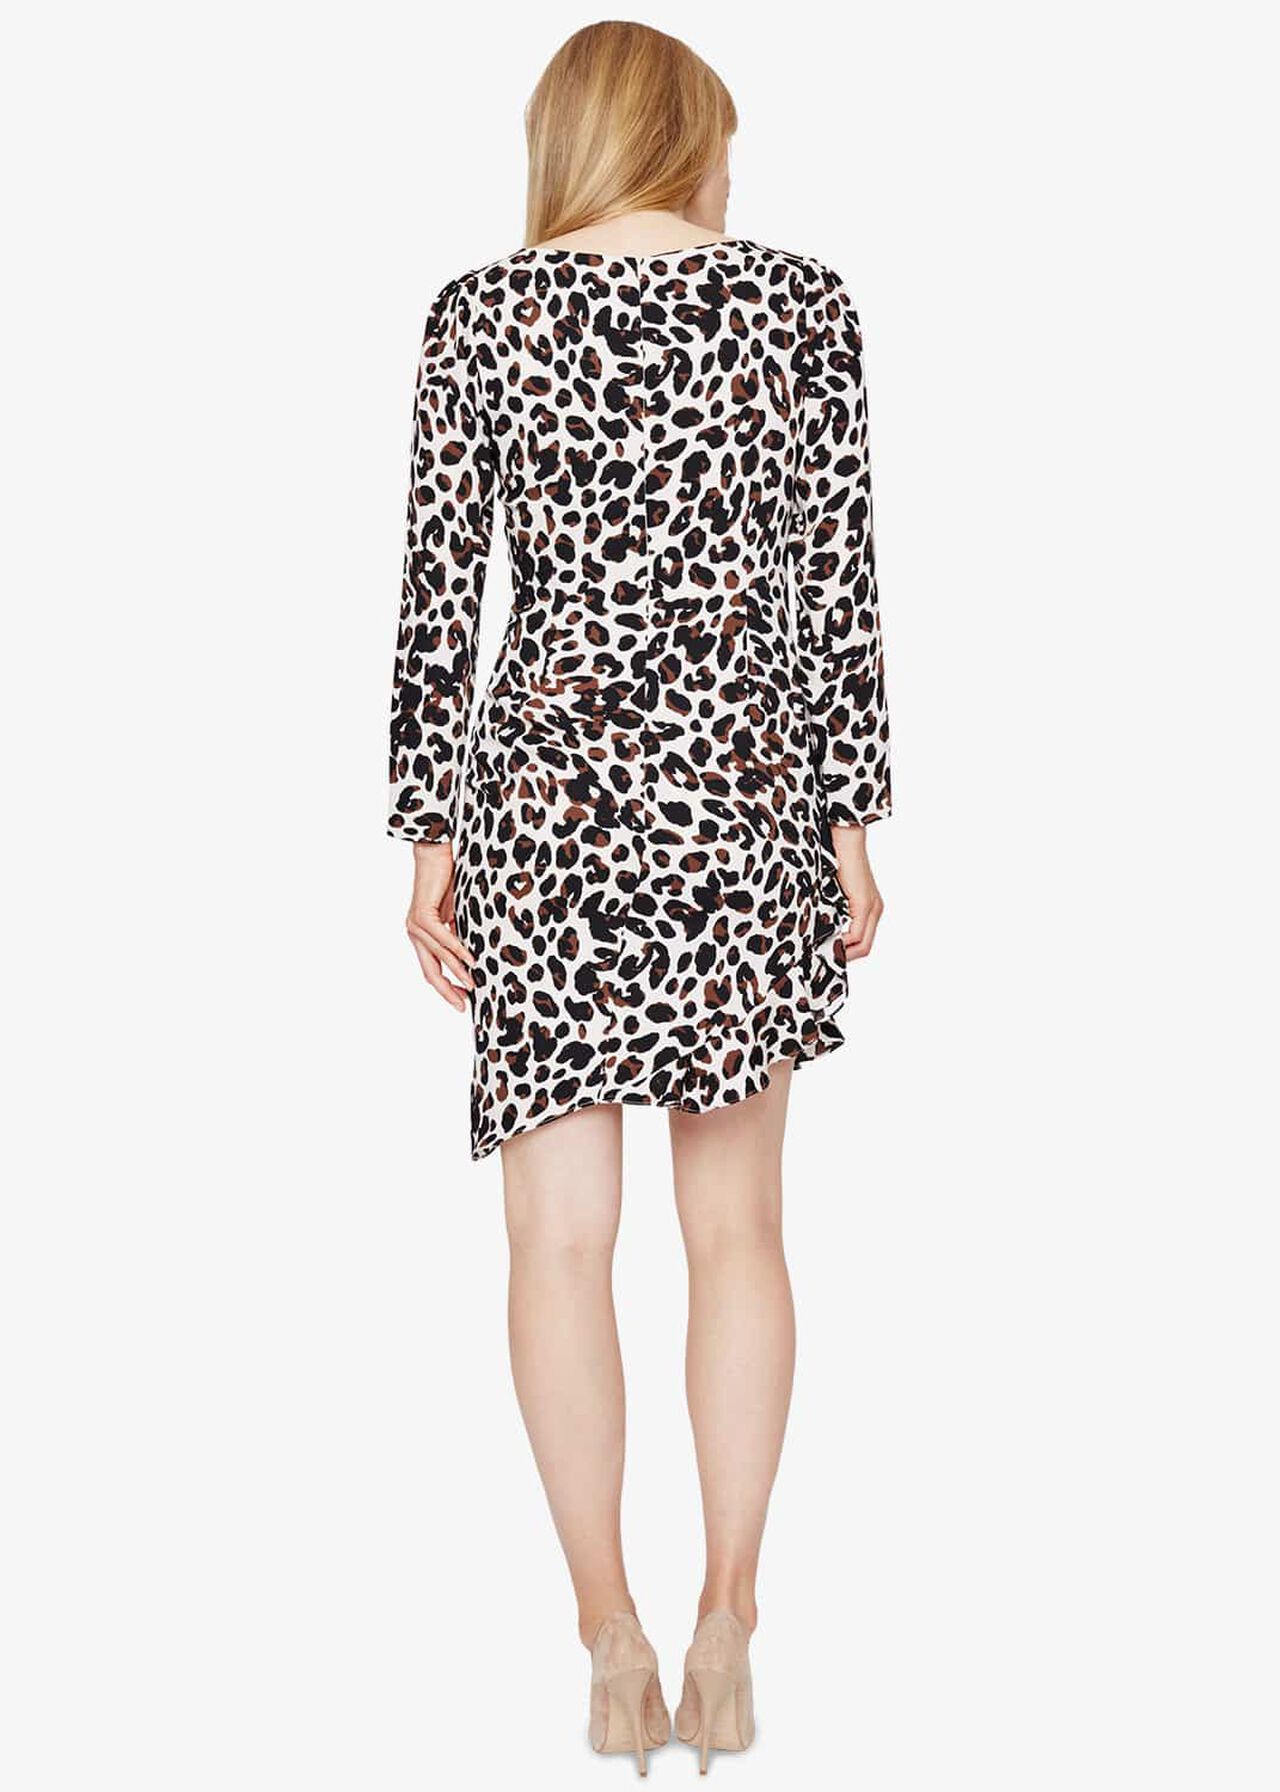 Carrera Leopard Print Dress